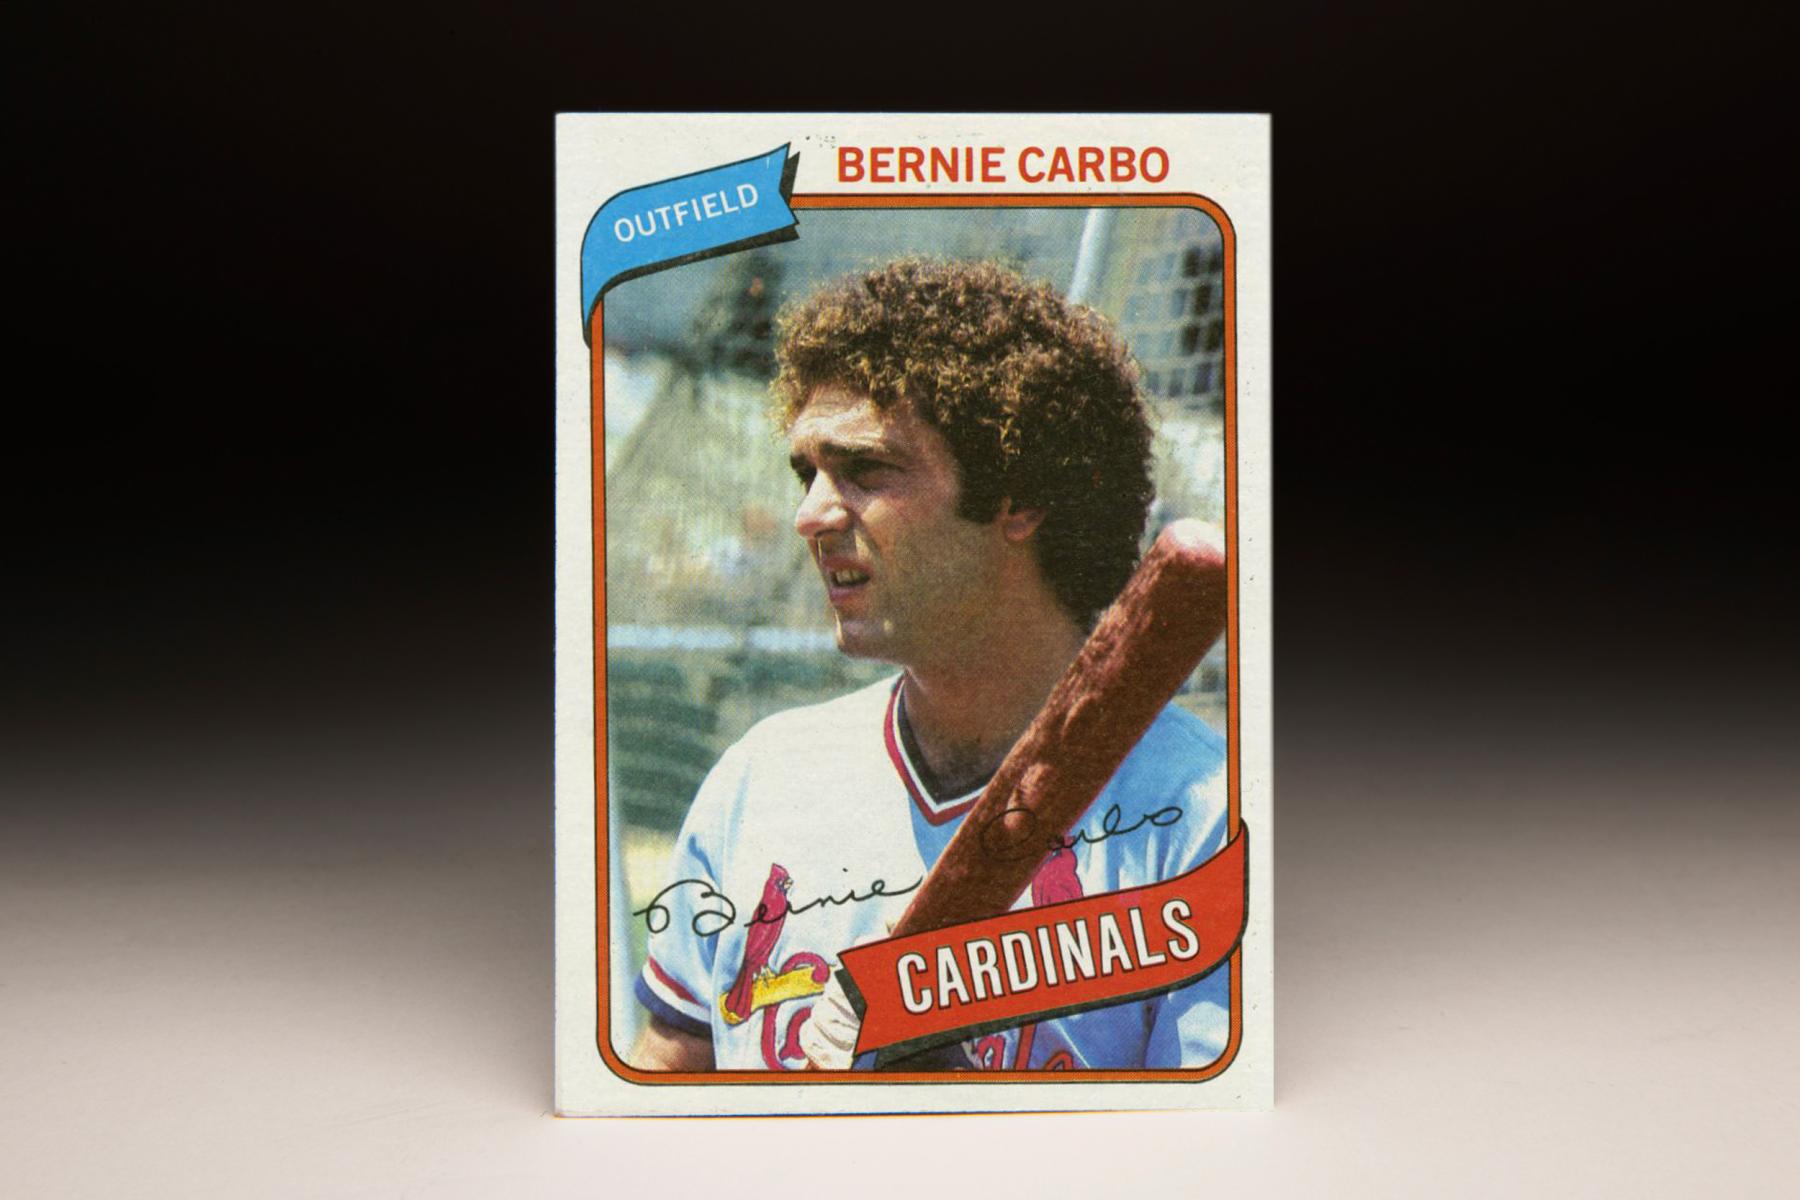 Bernie Carbo Jersey - Cincinnati Reds 1969 Home Cooperstown